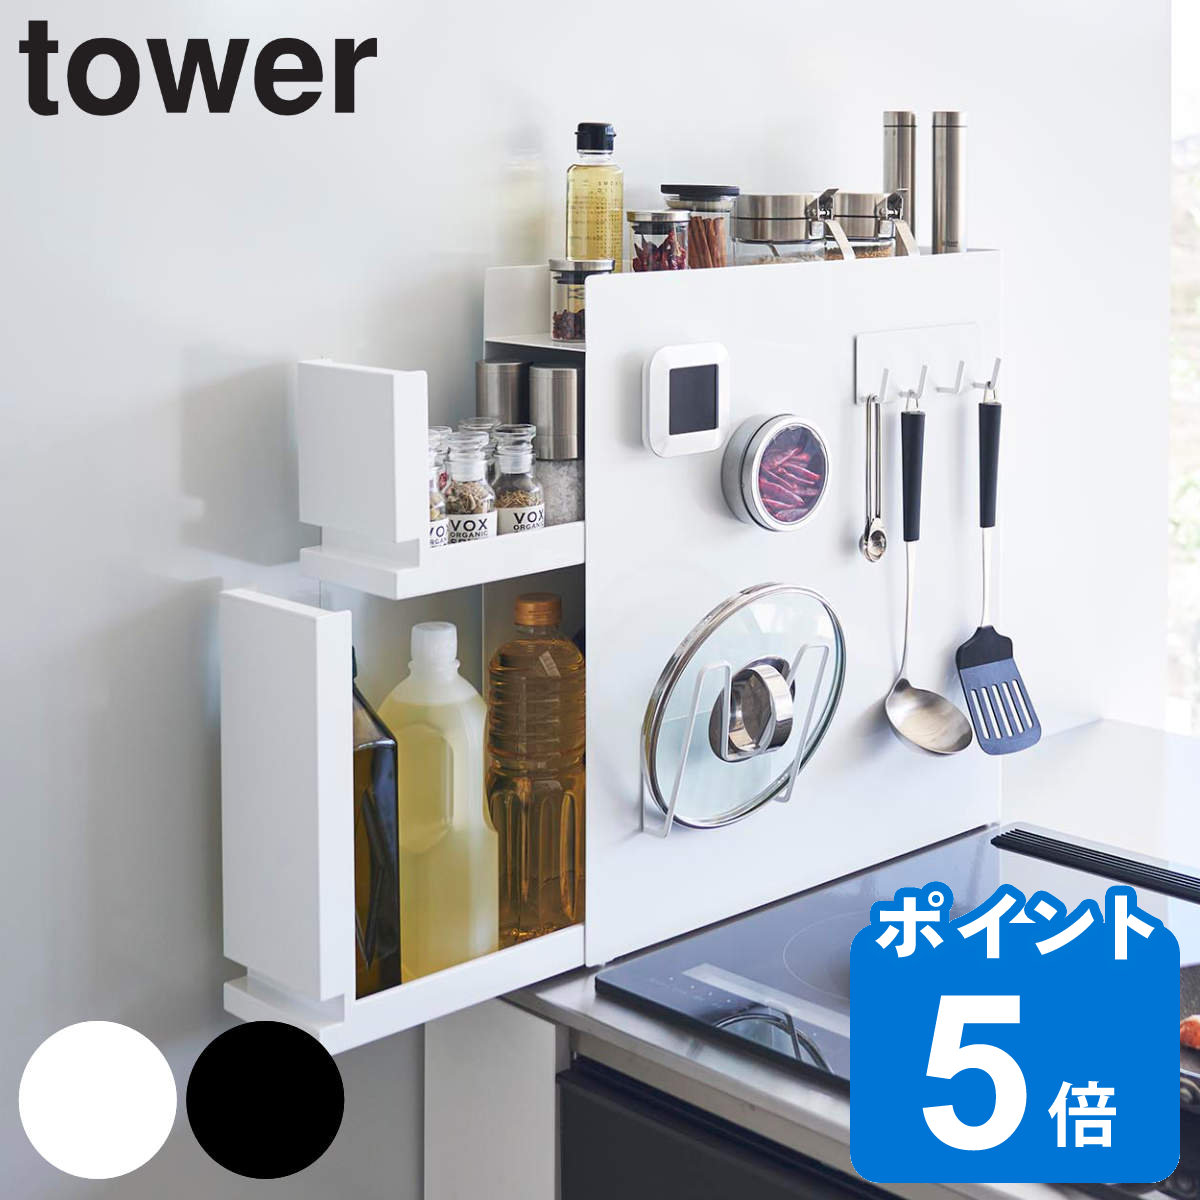 山崎実業 tower 隠せる調味料ラック タワー 2段